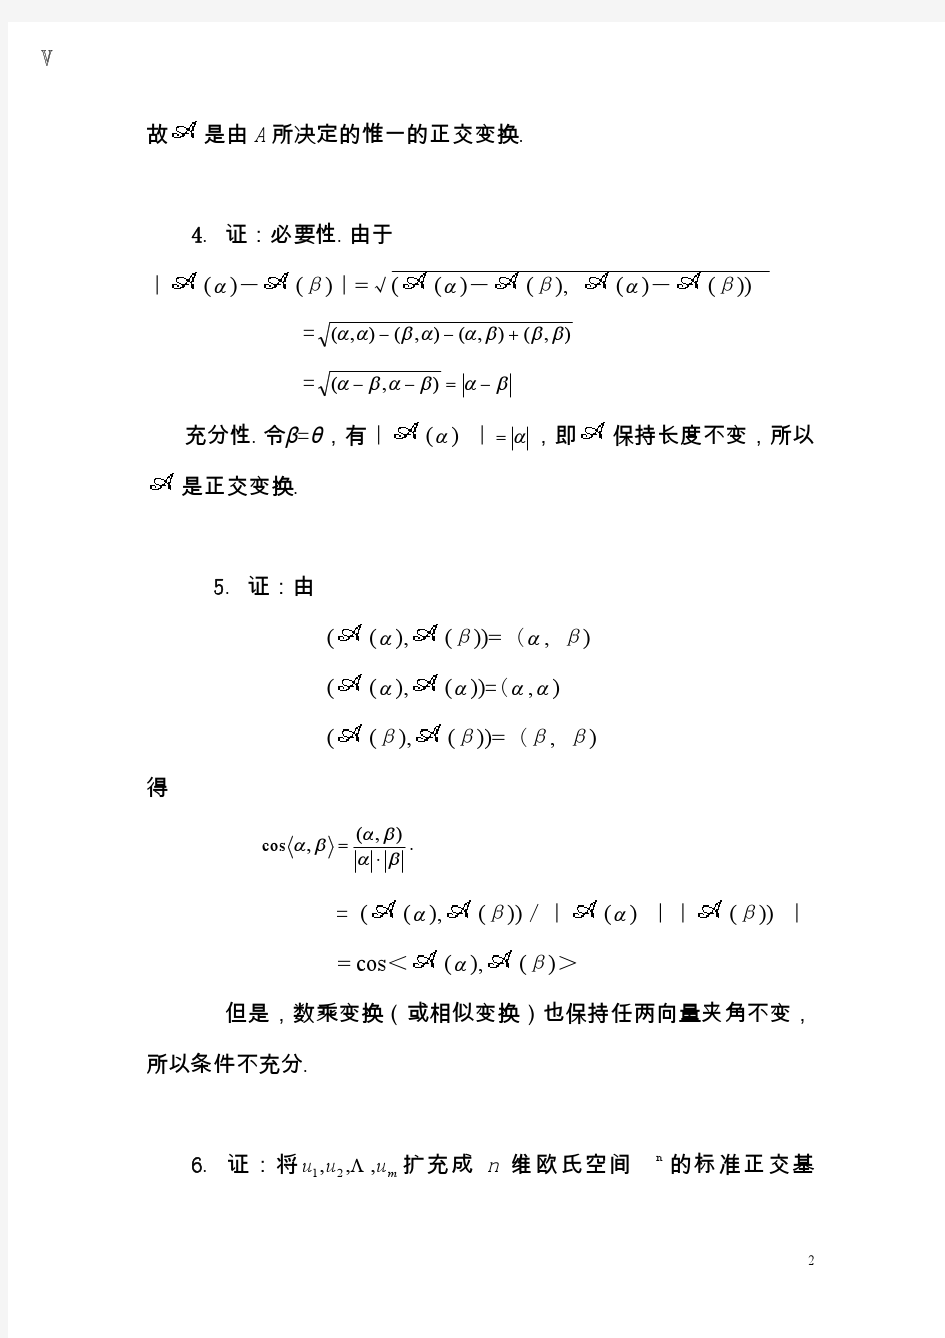 《矩阵论》习题答案,清华大学出版社,研究生教材习题 2.2